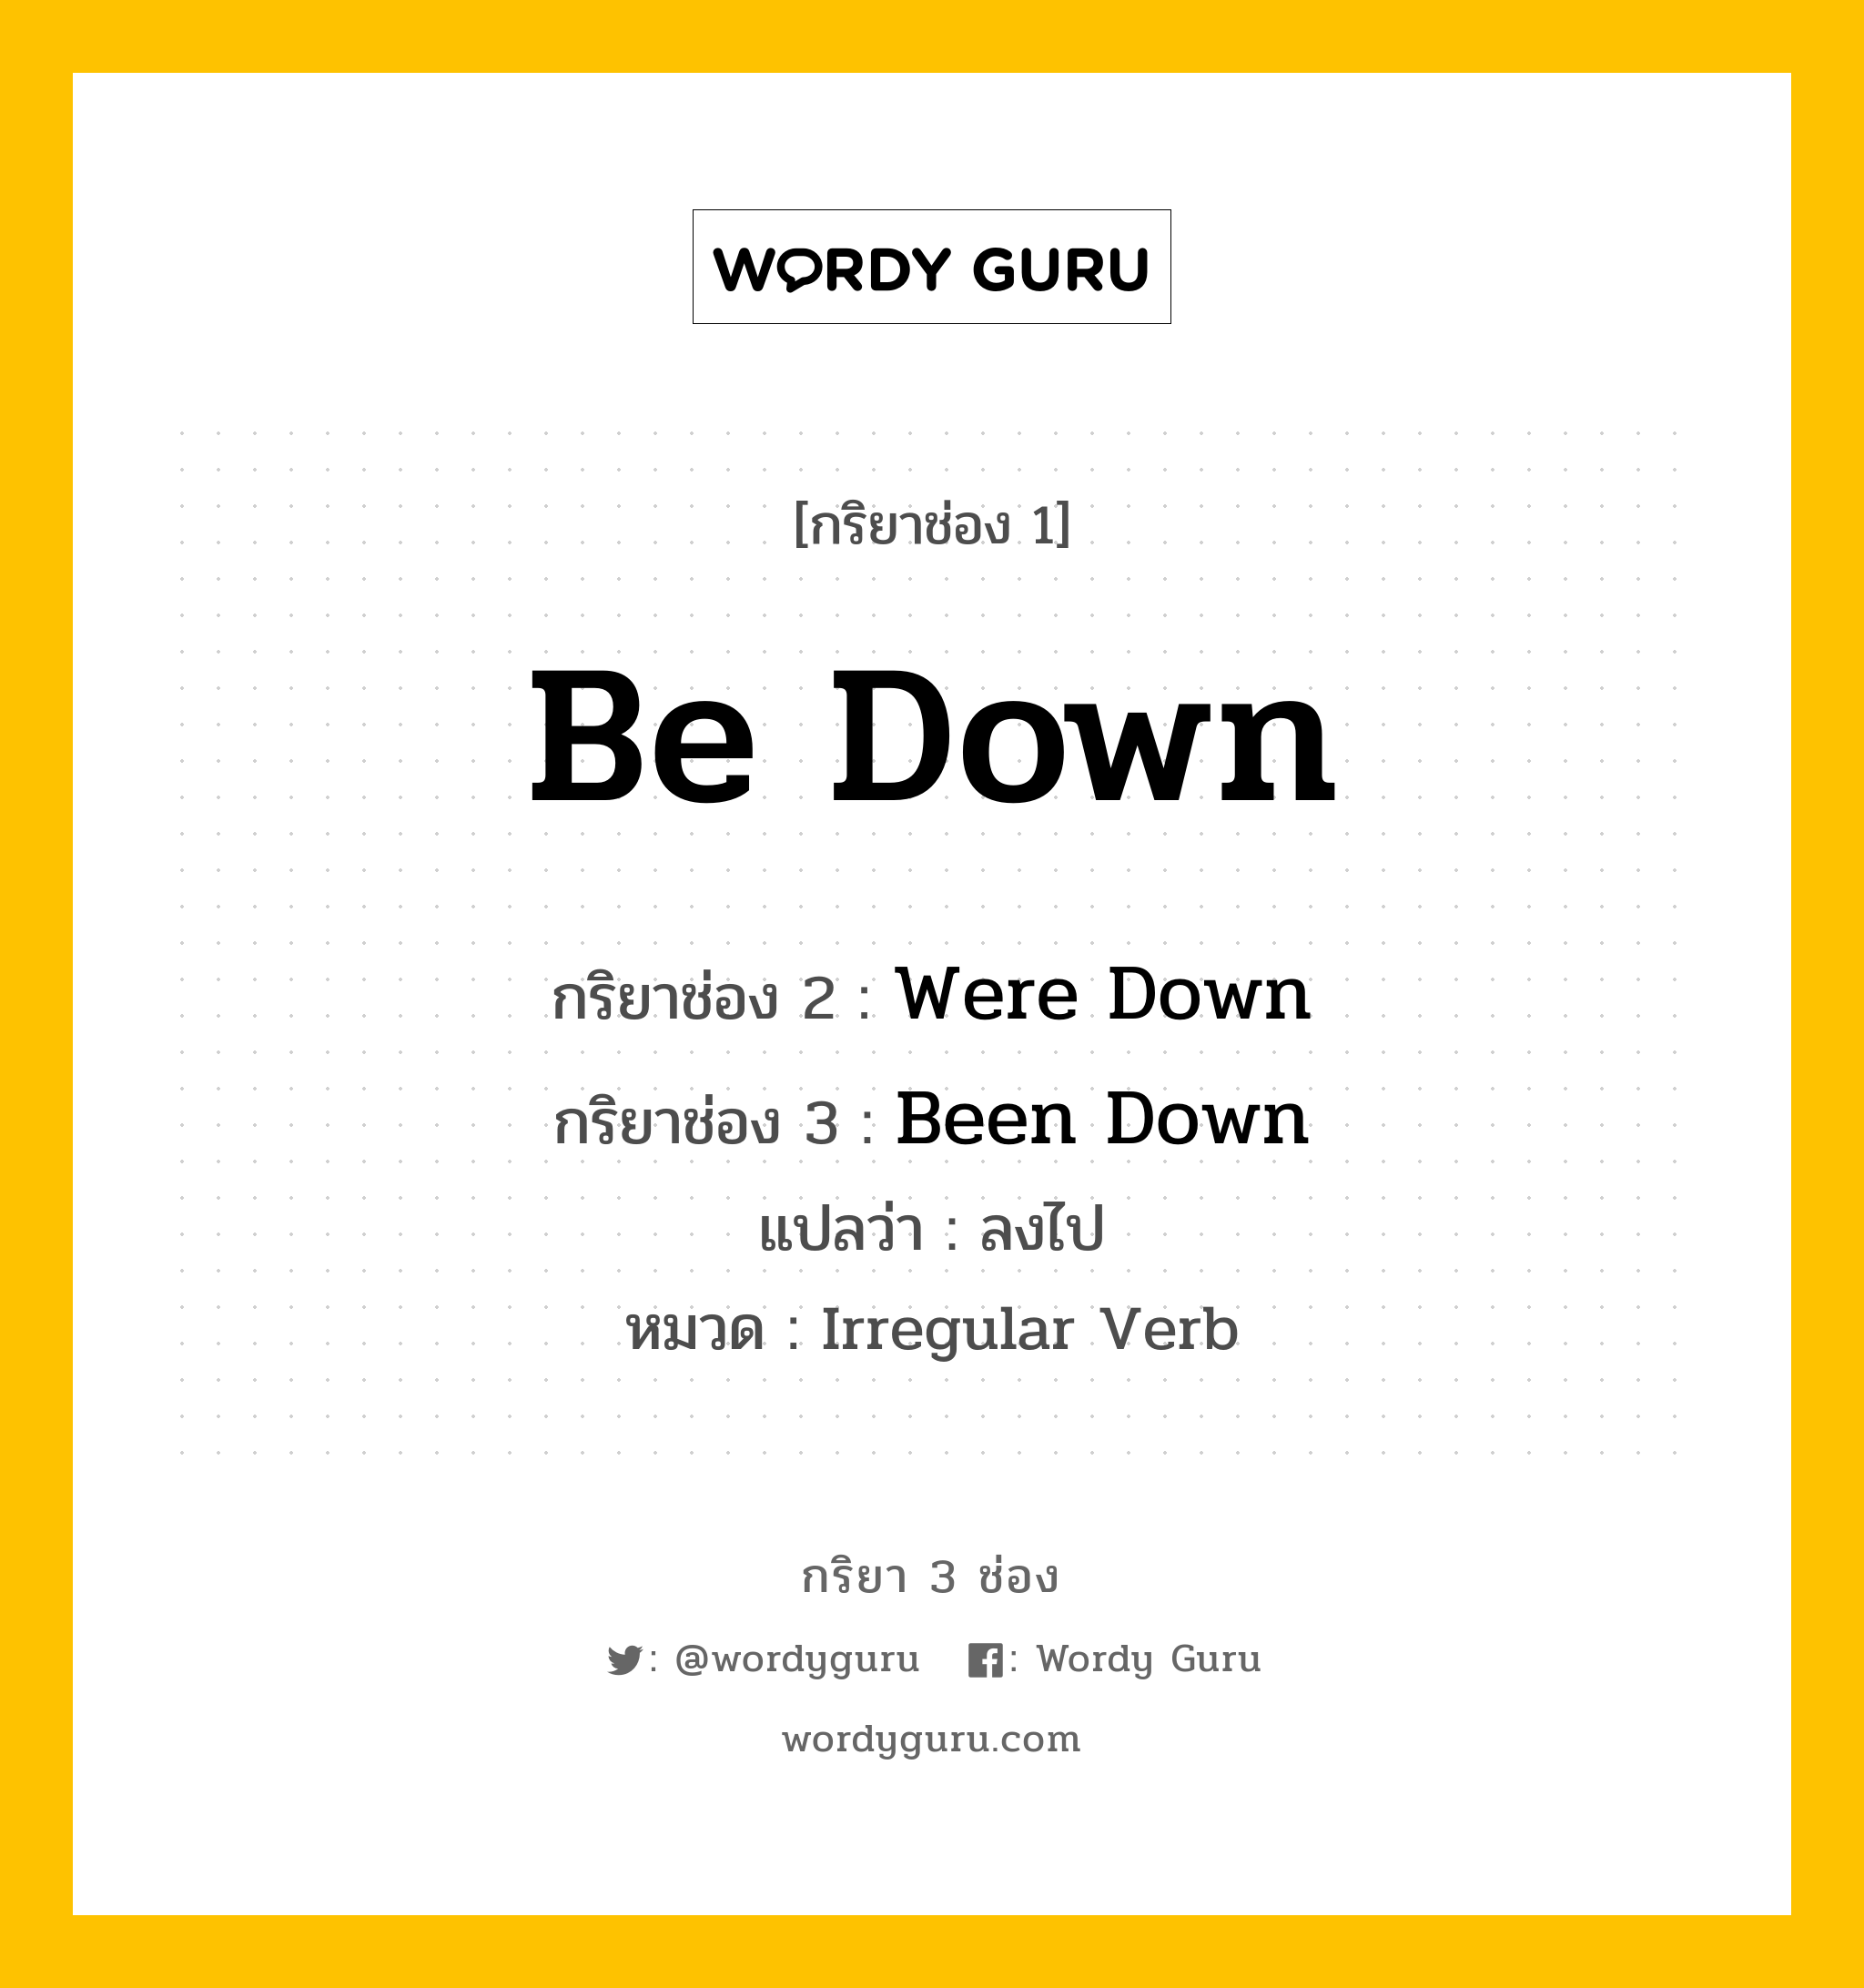 กริยา 3 ช่อง: Be Down ช่อง 2 Be Down ช่อง 3 คืออะไร, กริยาช่อง 1 Be Down กริยาช่อง 2 Were Down กริยาช่อง 3 Been Down แปลว่า ลงไป หมวด Irregular Verb หมวด Irregular Verb